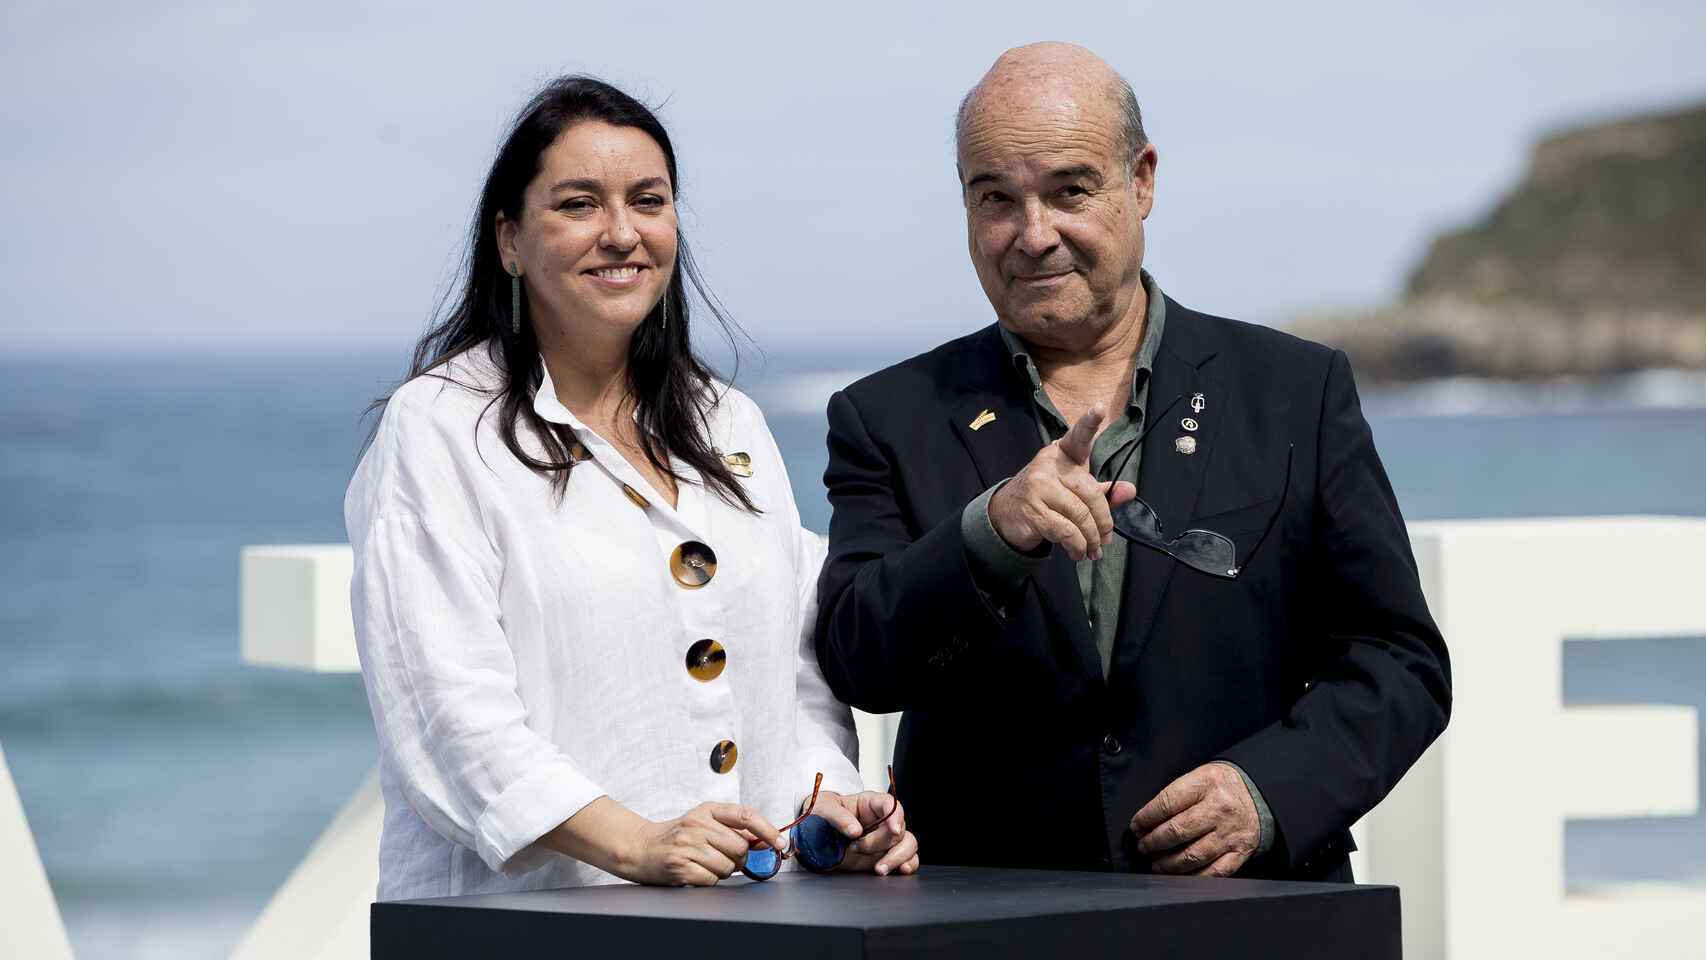 Antonio resines y Ana Pérez-Lorente se daban el 'sí quiero' en una ceremonia íntima después de 30 años juntos.